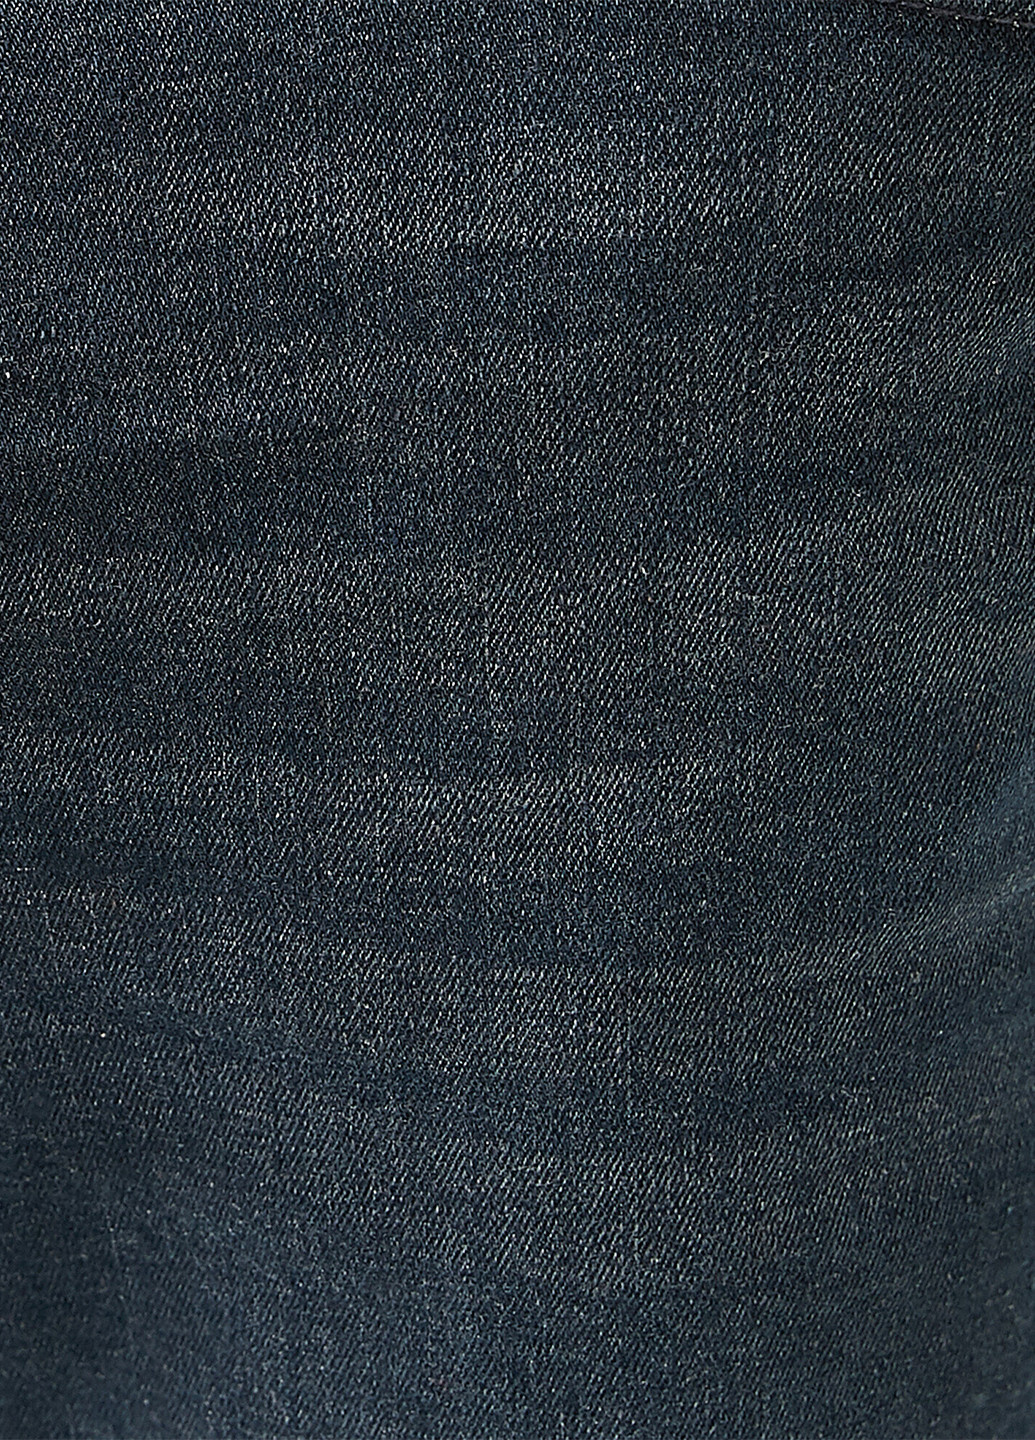 Серо-синие демисезонные скинни джинсы KOTON